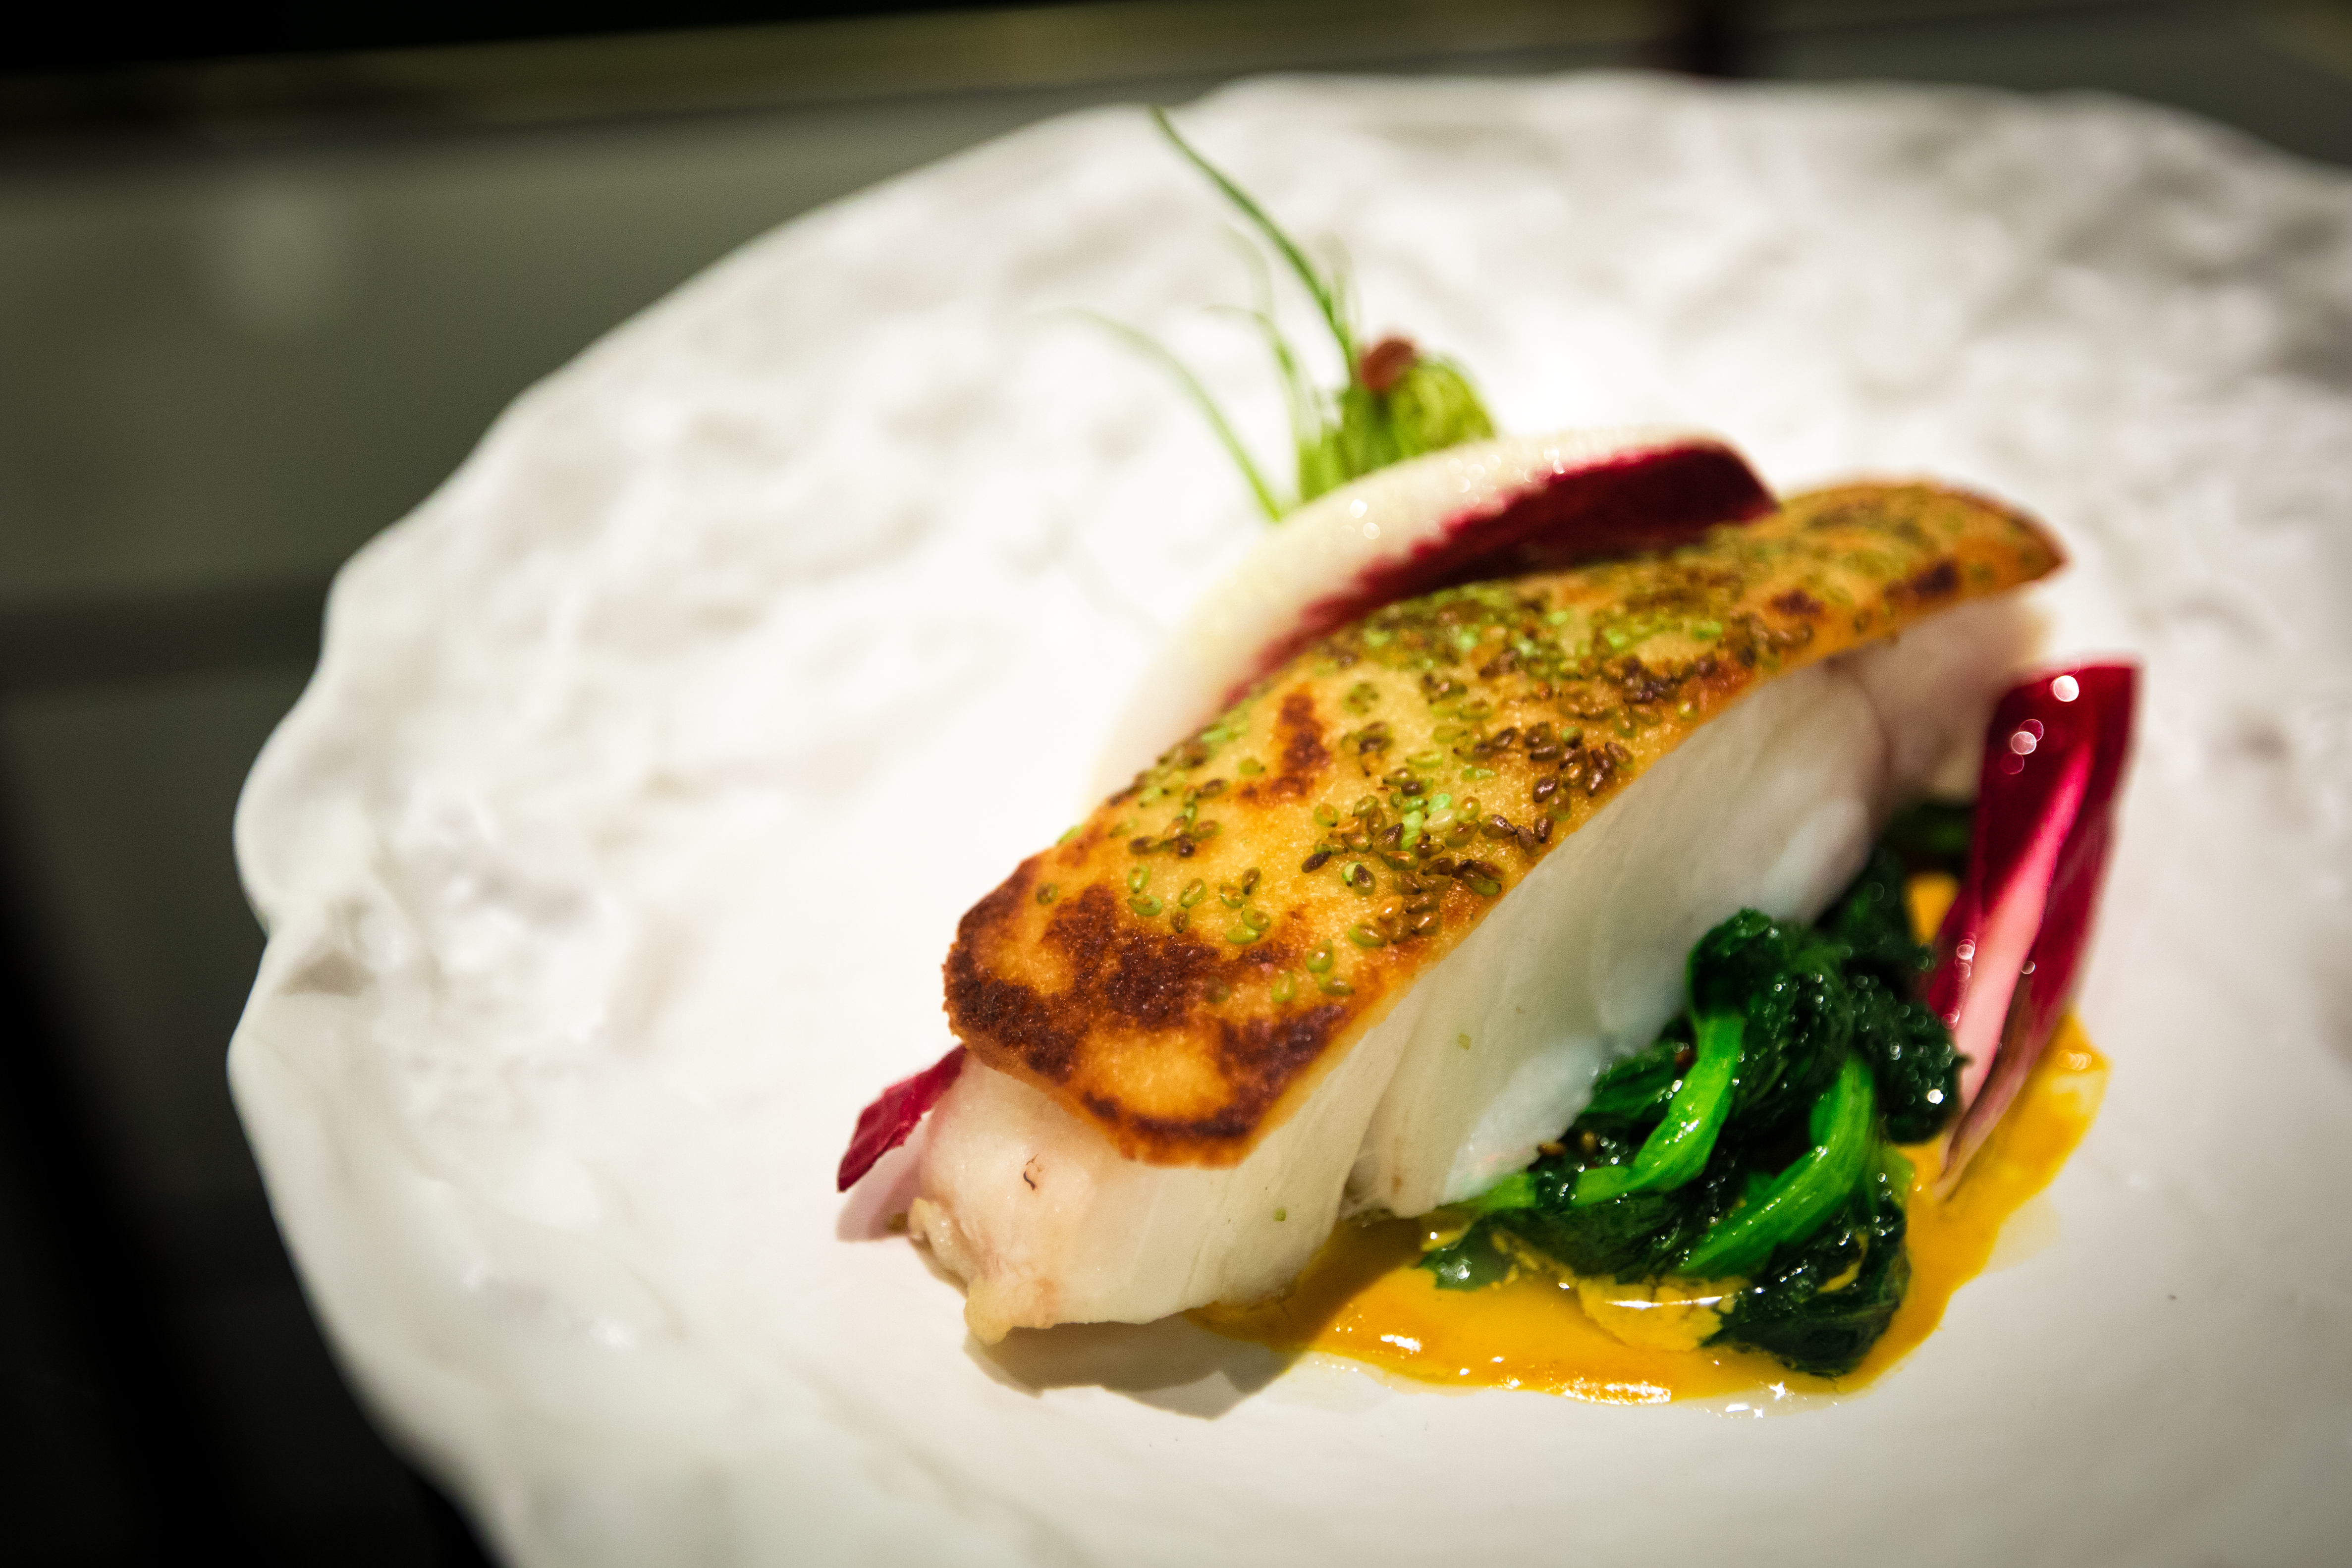 Fish - wasabi - cabillaud - les foodies - paris - resto 75004 - restaurant le marais - poisson